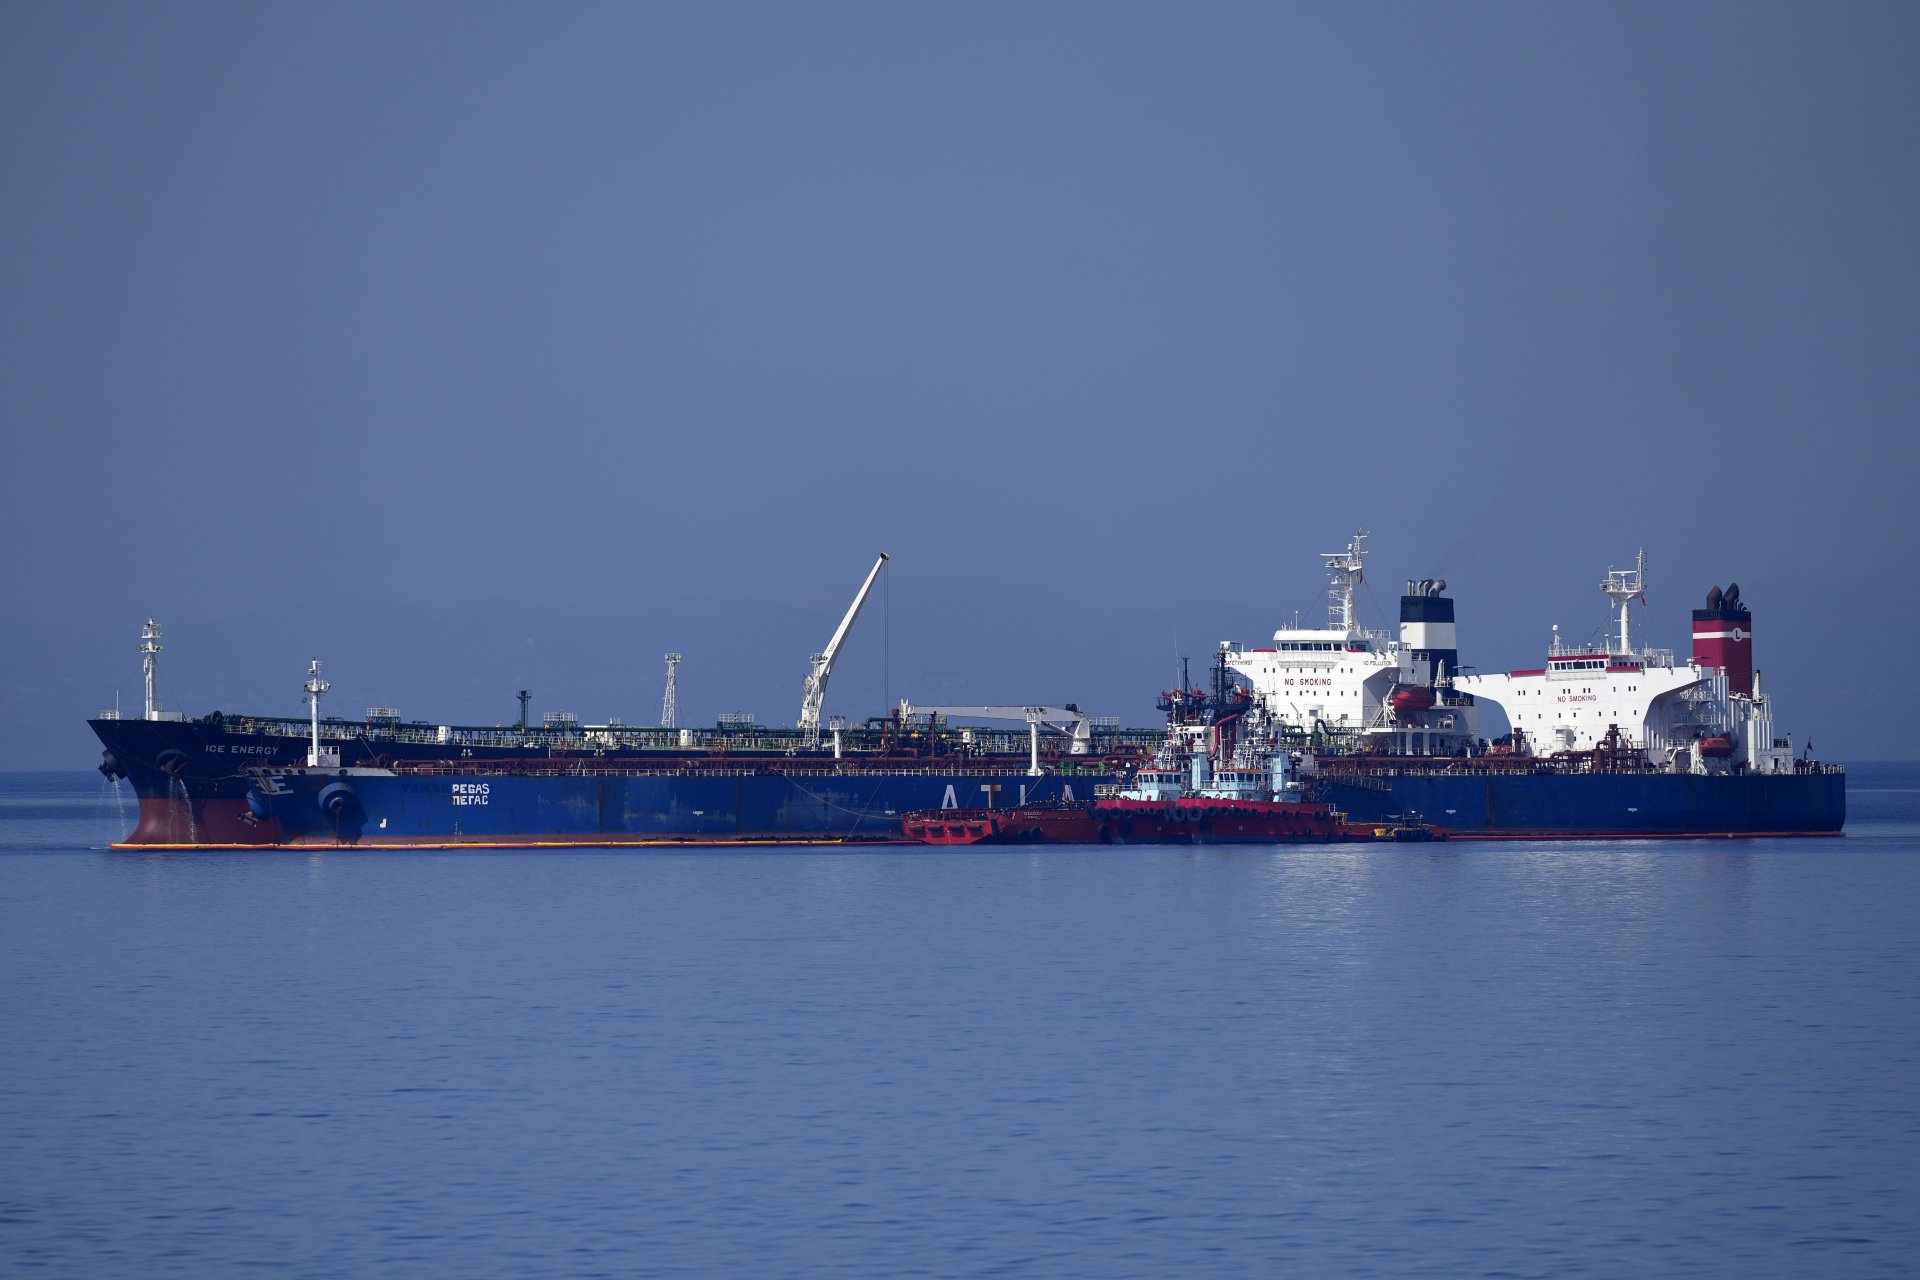 Танкерът Пегас, който наскоро промени името си на Лана, на преден план край пристанището Каристос на остров Евия в Егейско море, Гърция, петък, 27 май 2022 г.